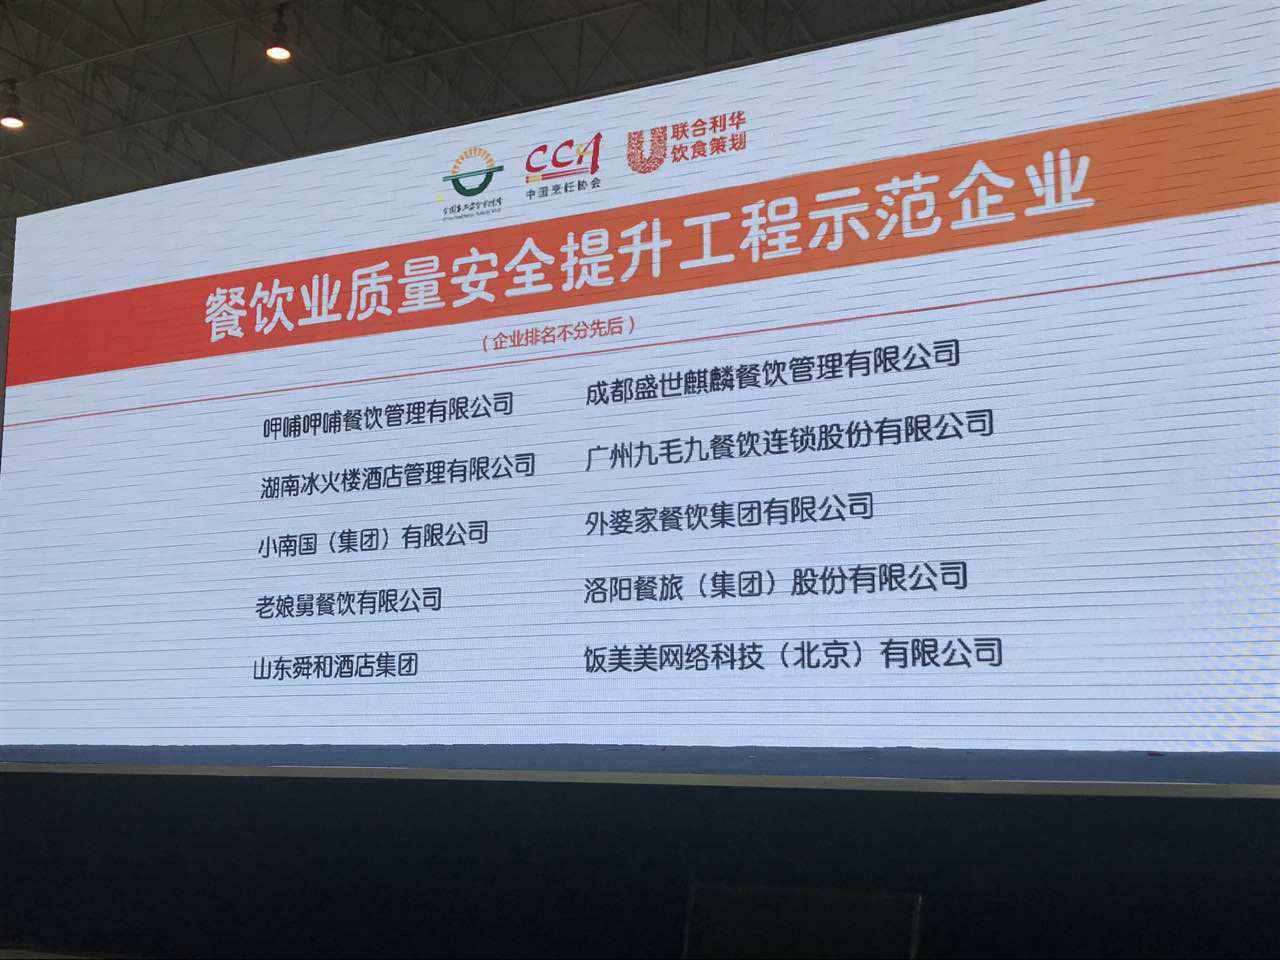 皇冠crown-最新官网(中国)CROWN有限公司入选全国首批“餐饮业质量安全提升工程示范企业”